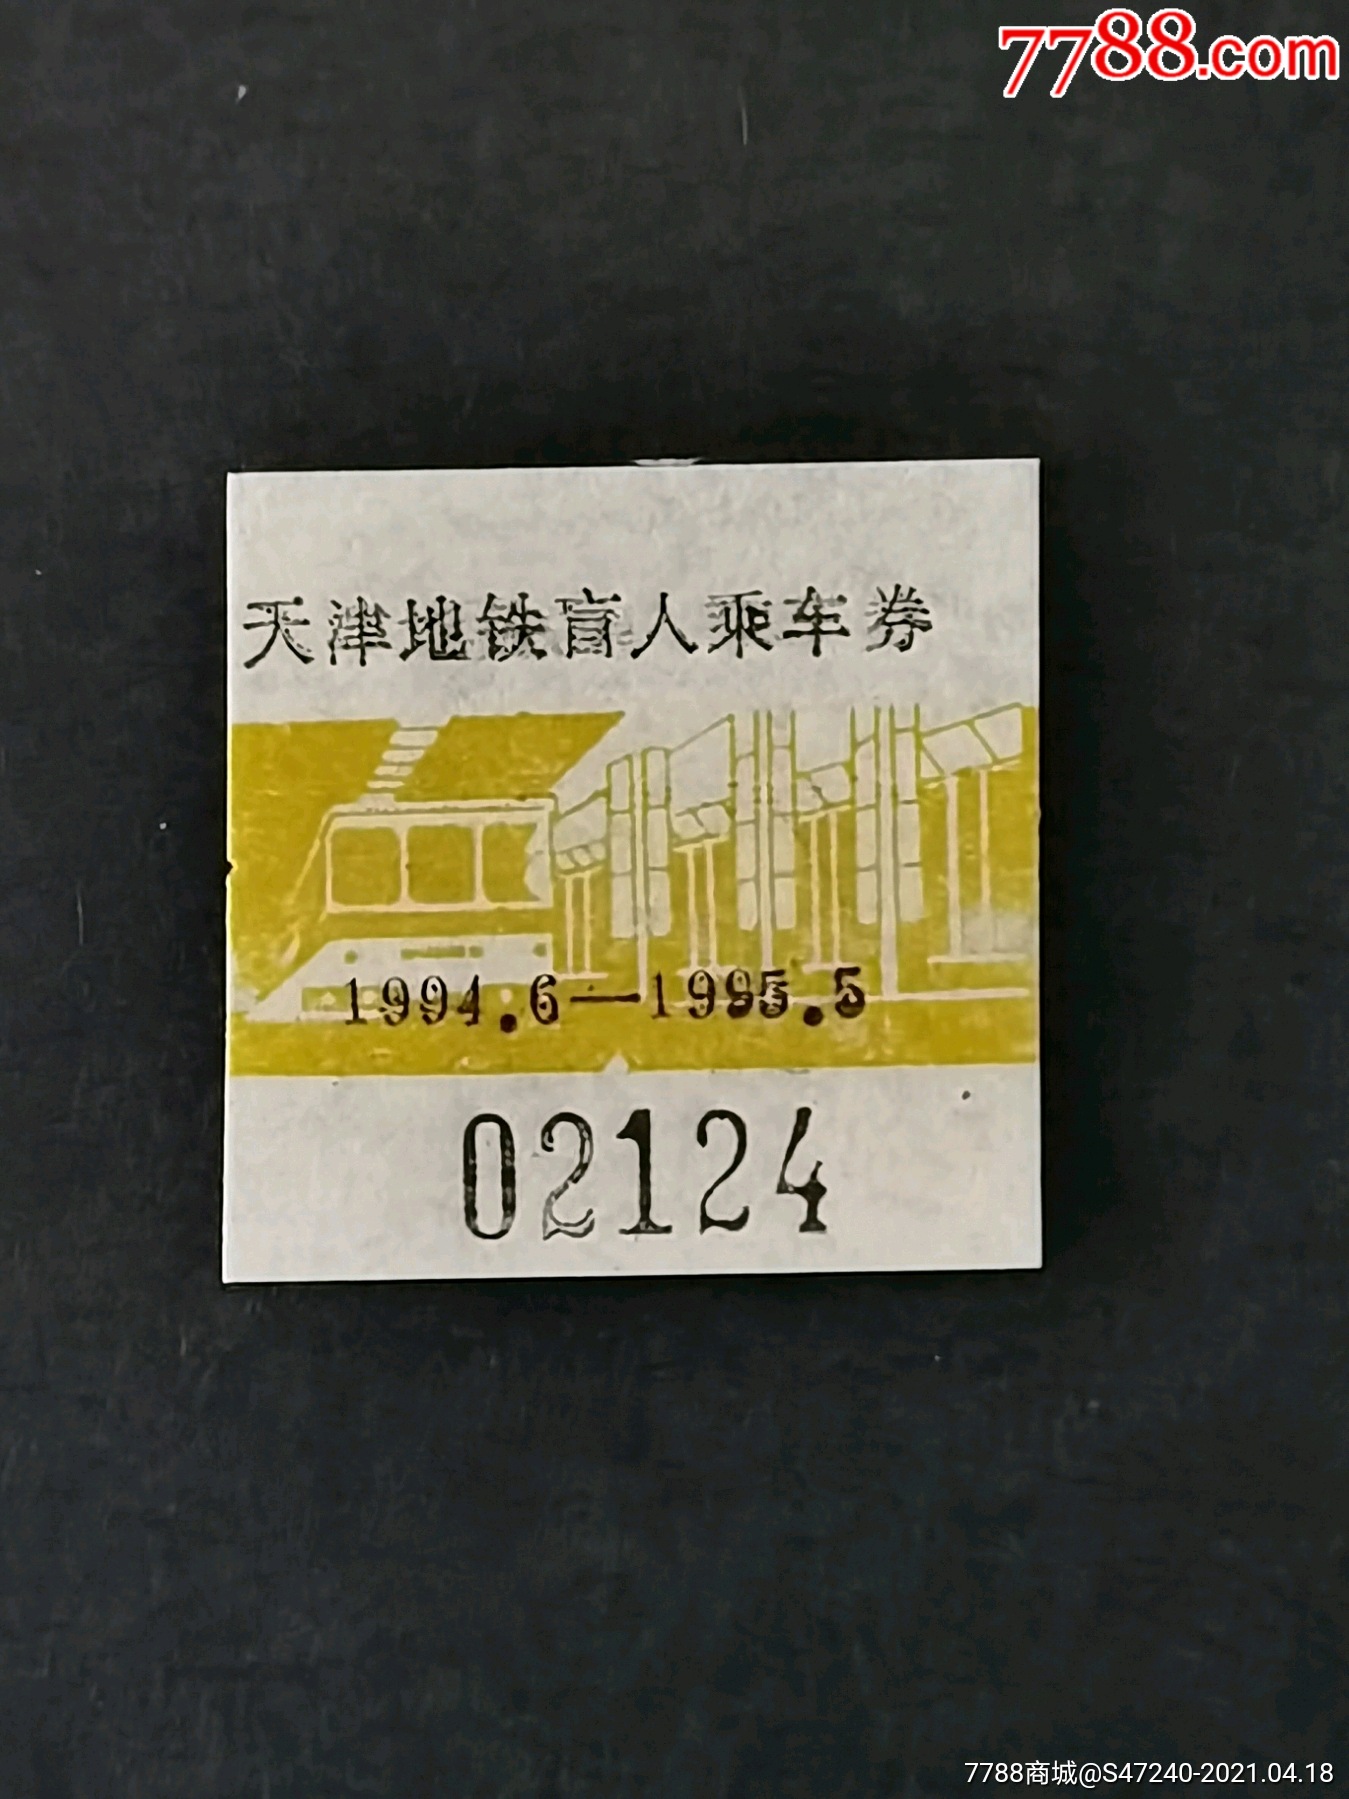 天津地铁特惠卡图片